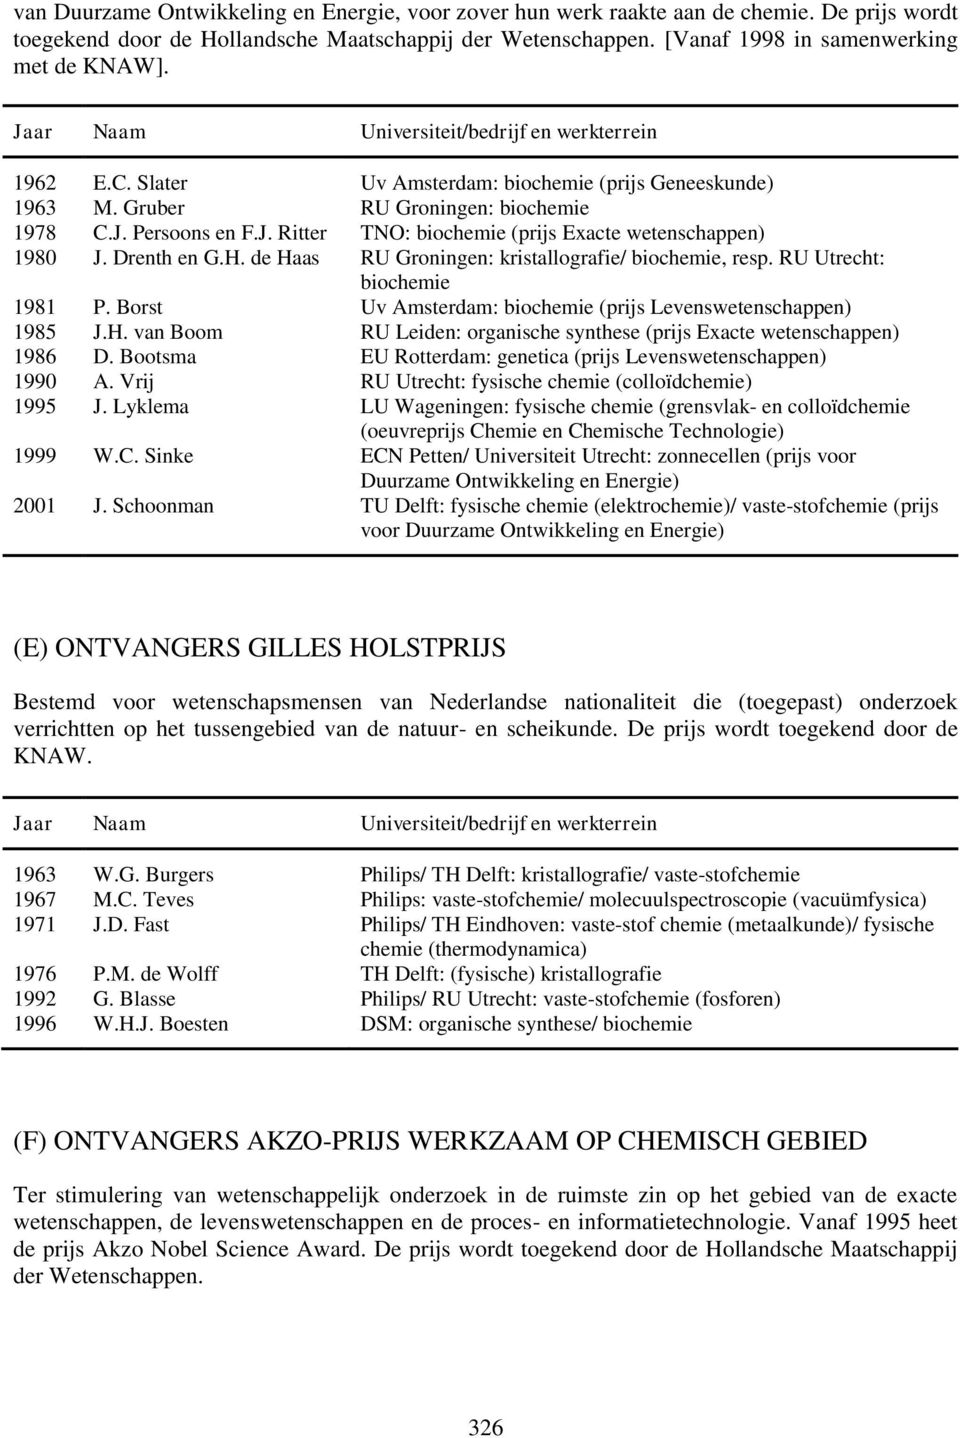 de Haas RU Groningen: kristallografie/ bio, resp. RU Utrecht: bio 1981 P. Borst Uv Amsterdam: bio (prijs Levenswetenschappen) 1985 J.H. van Boom RU Leiden: organische synthese (prijs Exacte wetenschappen) 1986 D.